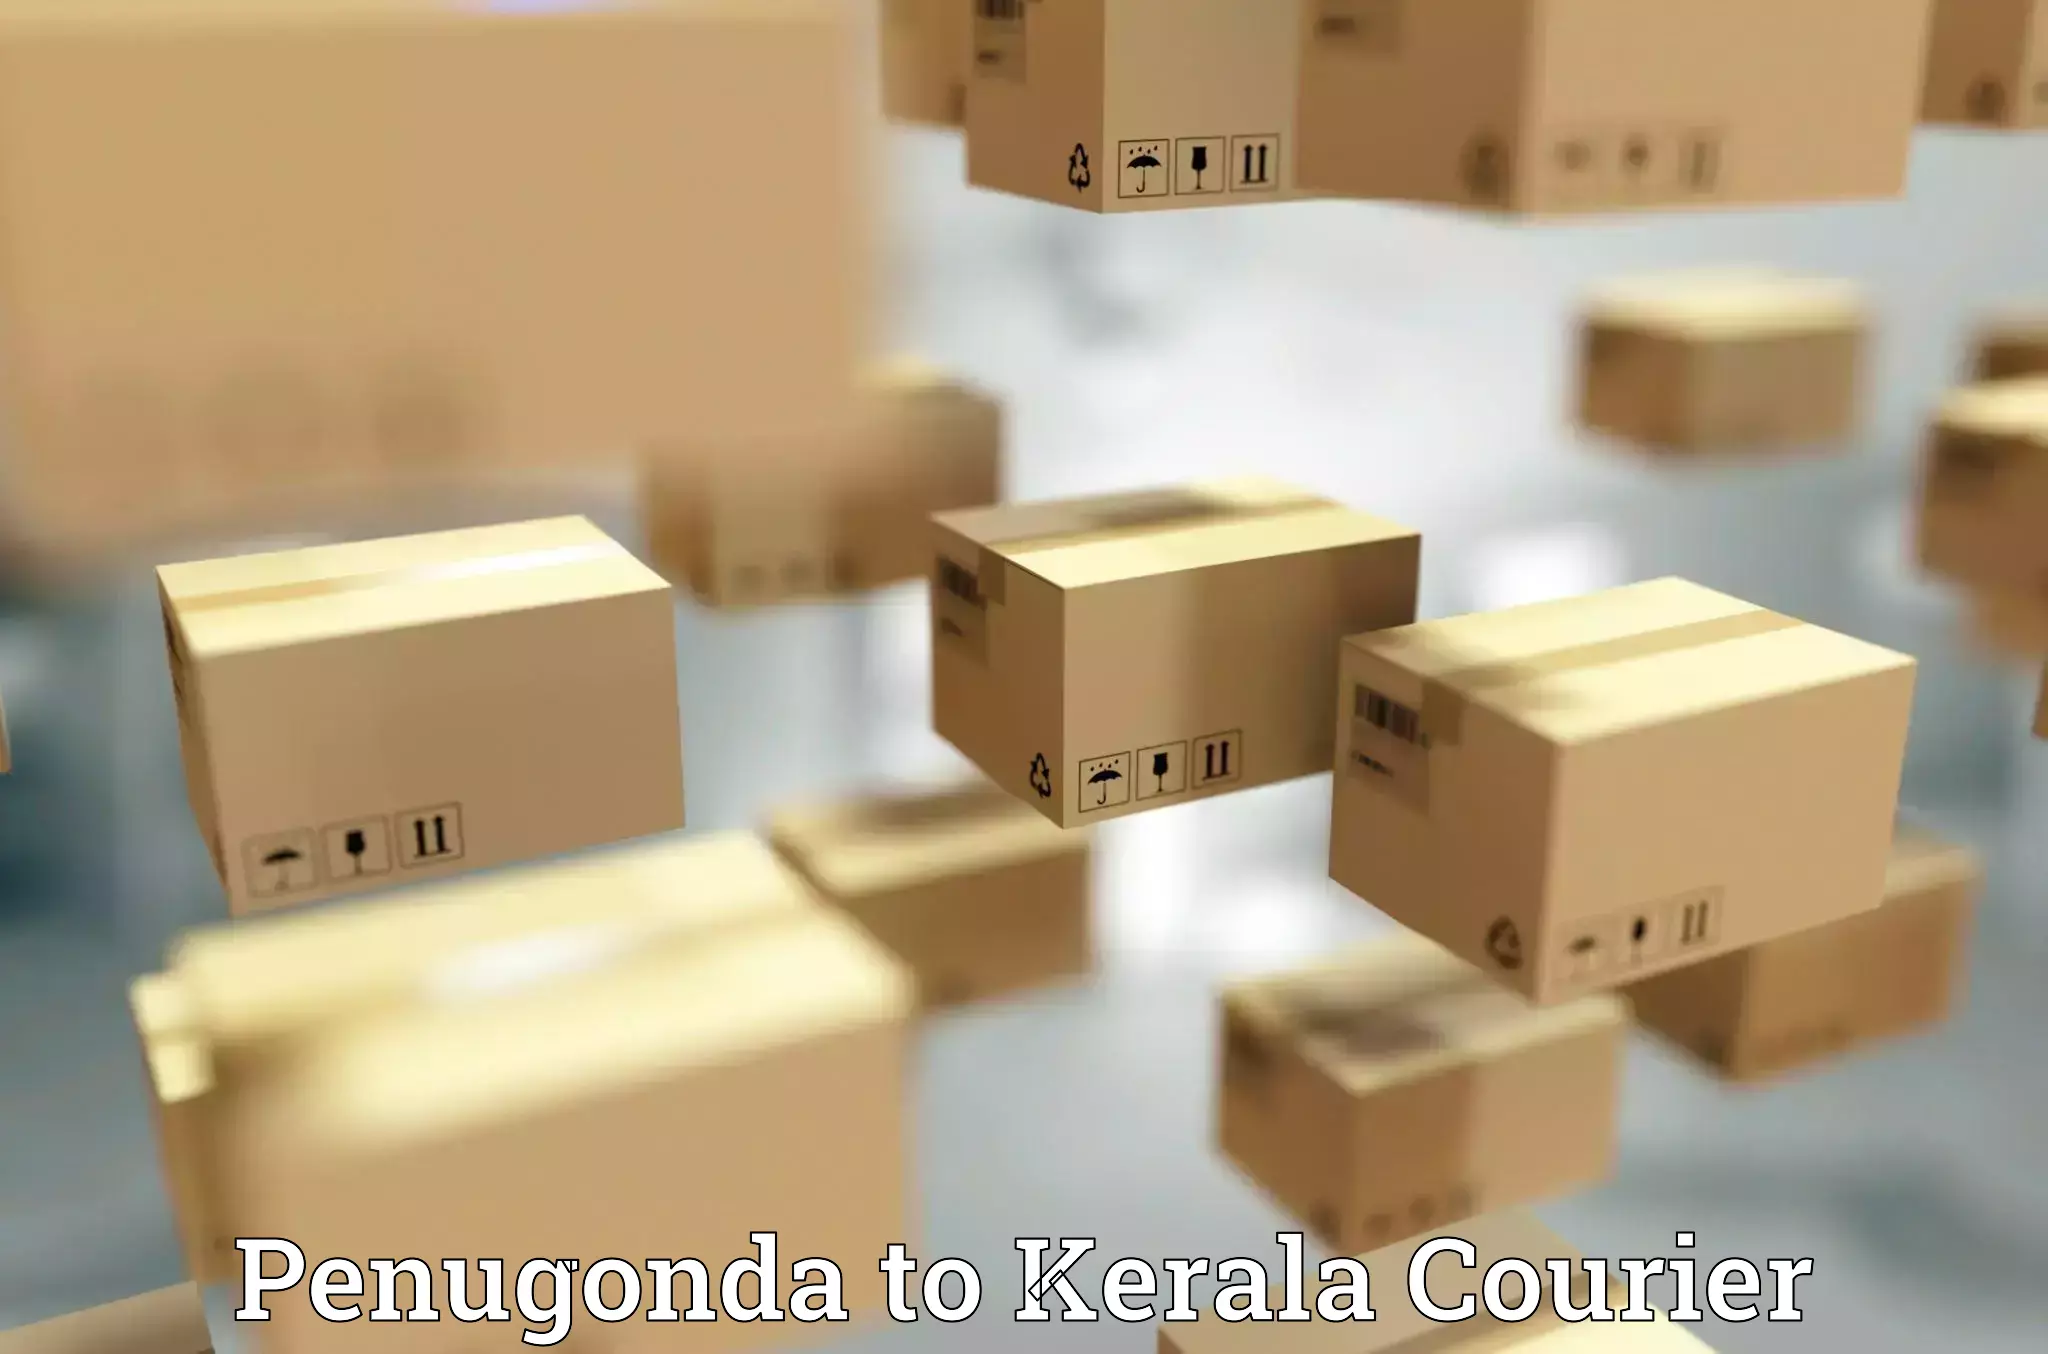 Courier app Penugonda to Kalluvathukkal